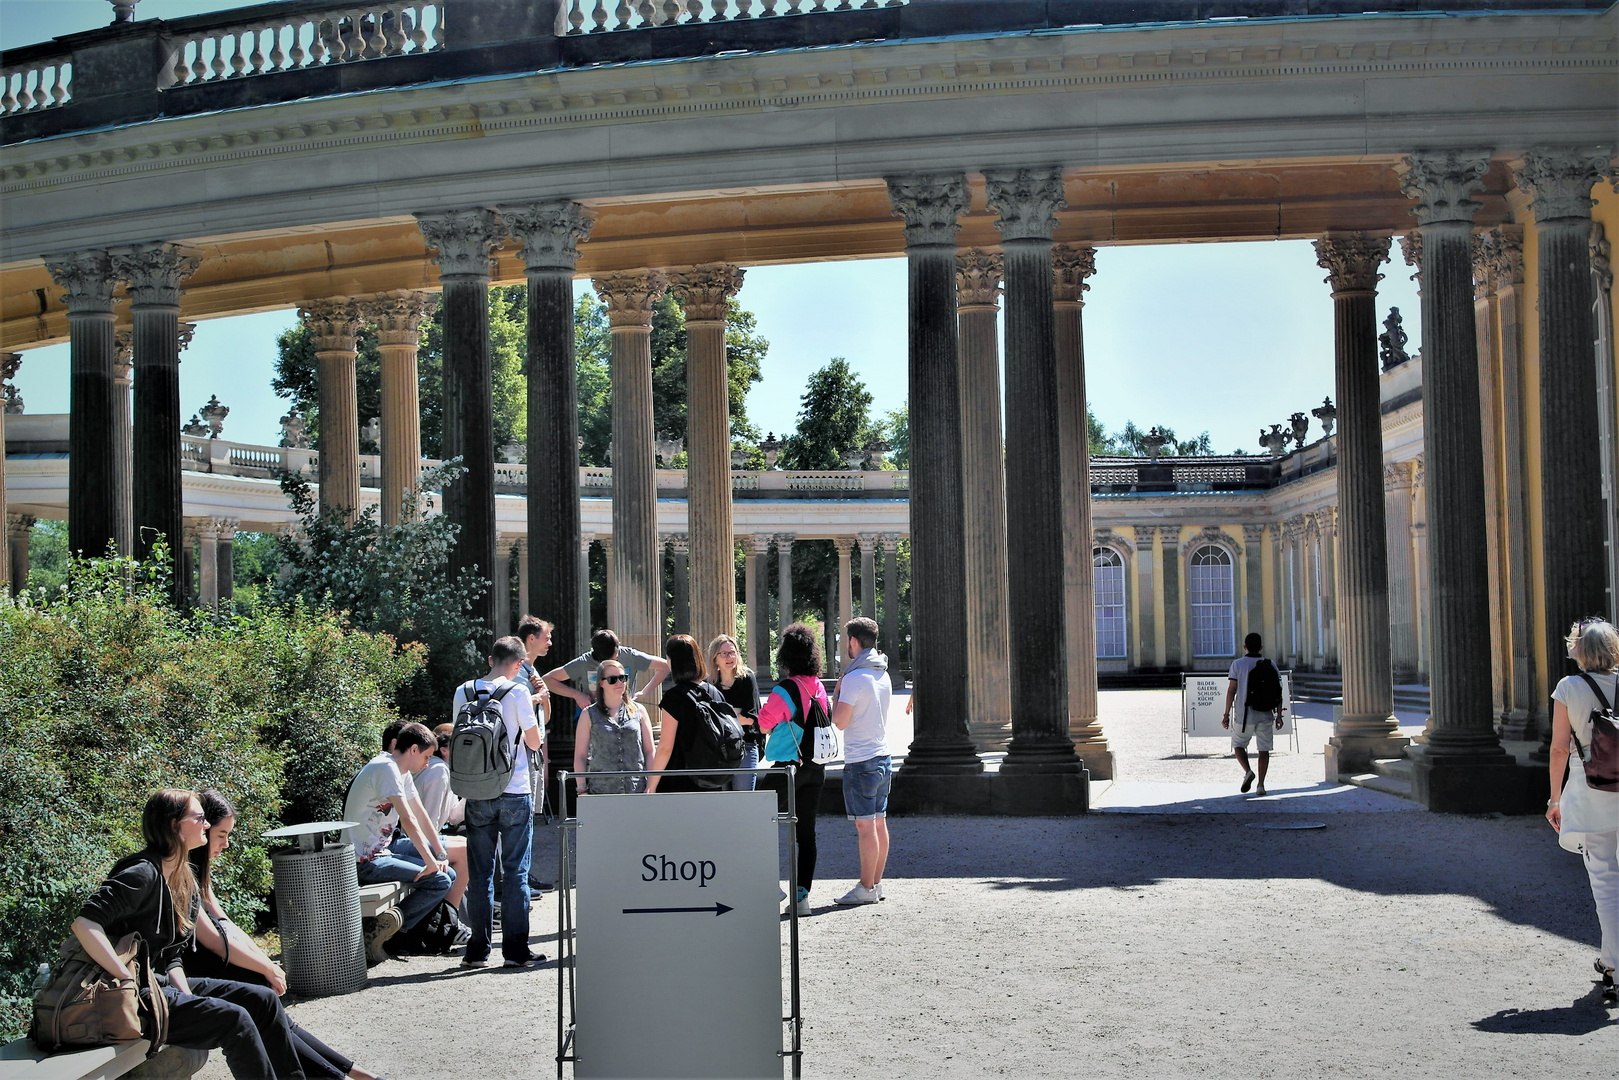 Potsdam Schloss Sanssouci  jugendliche Besuchergruppen